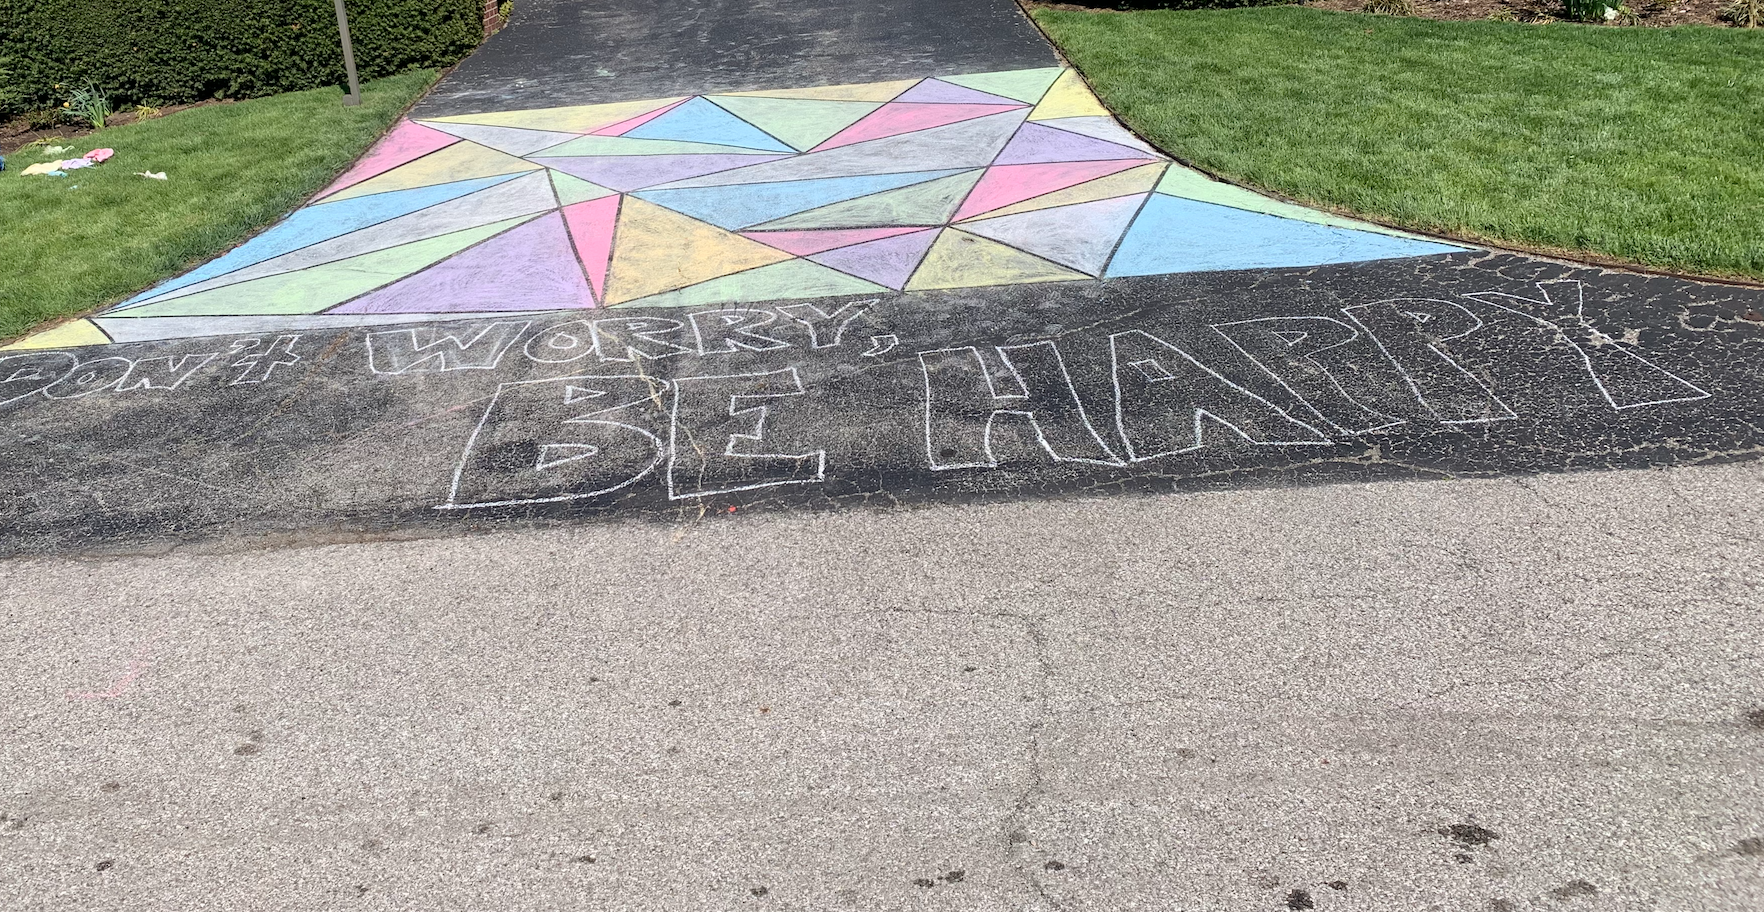 chalk on sidewalk that says "be happy"